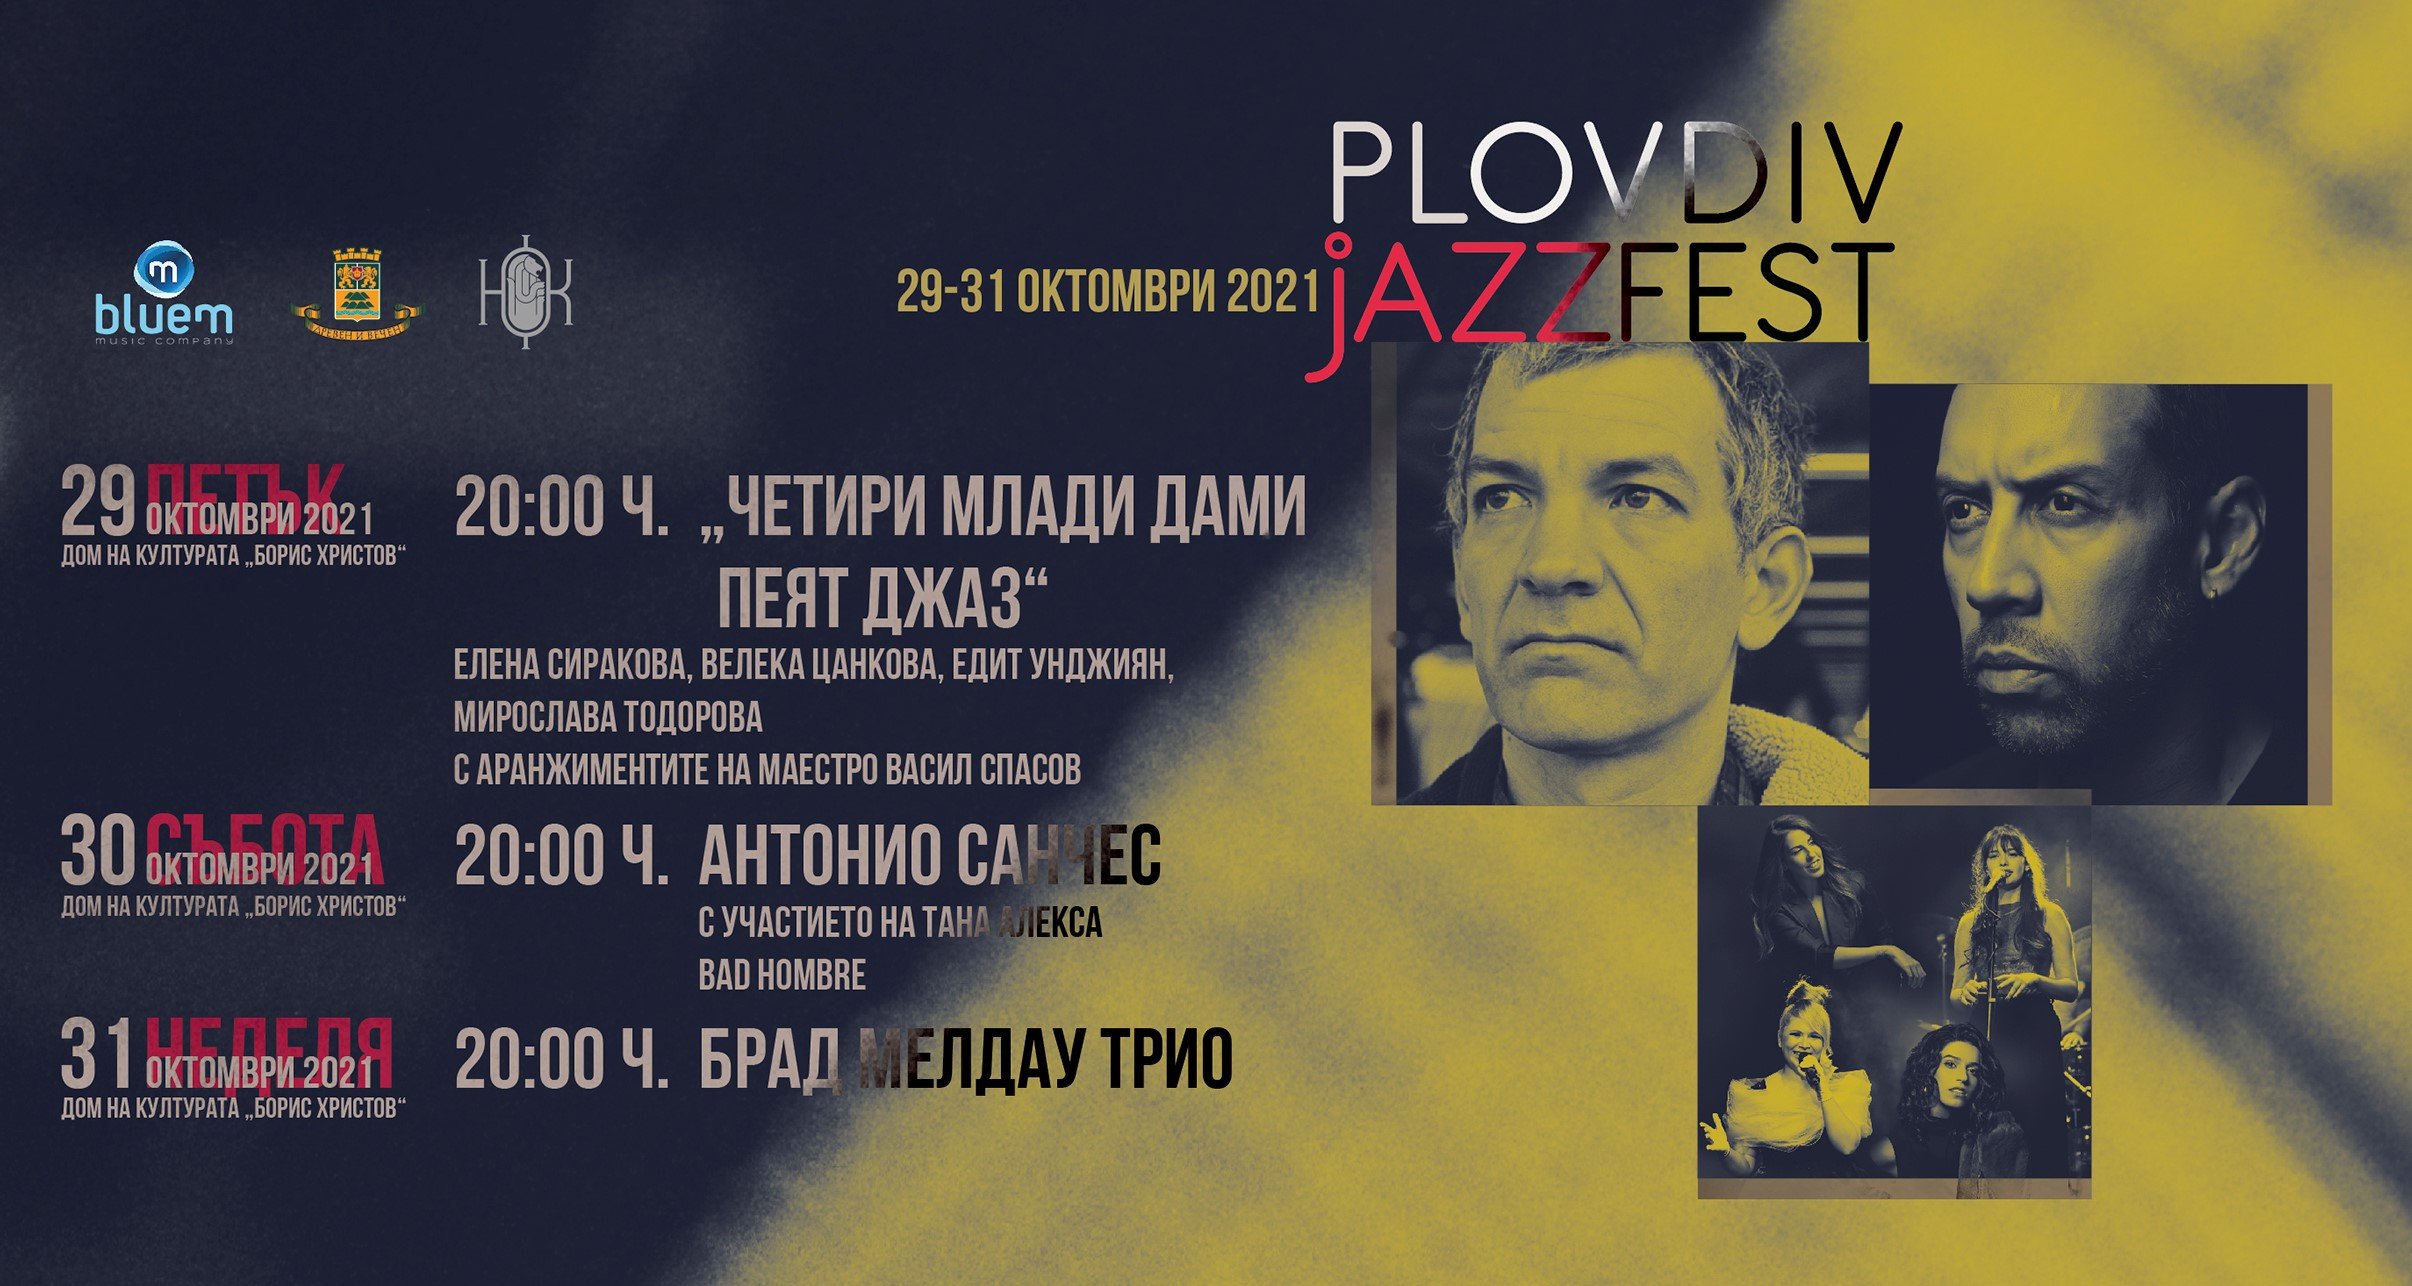 Тази година Plovdiv Jazz Fest се провежда в последните дни